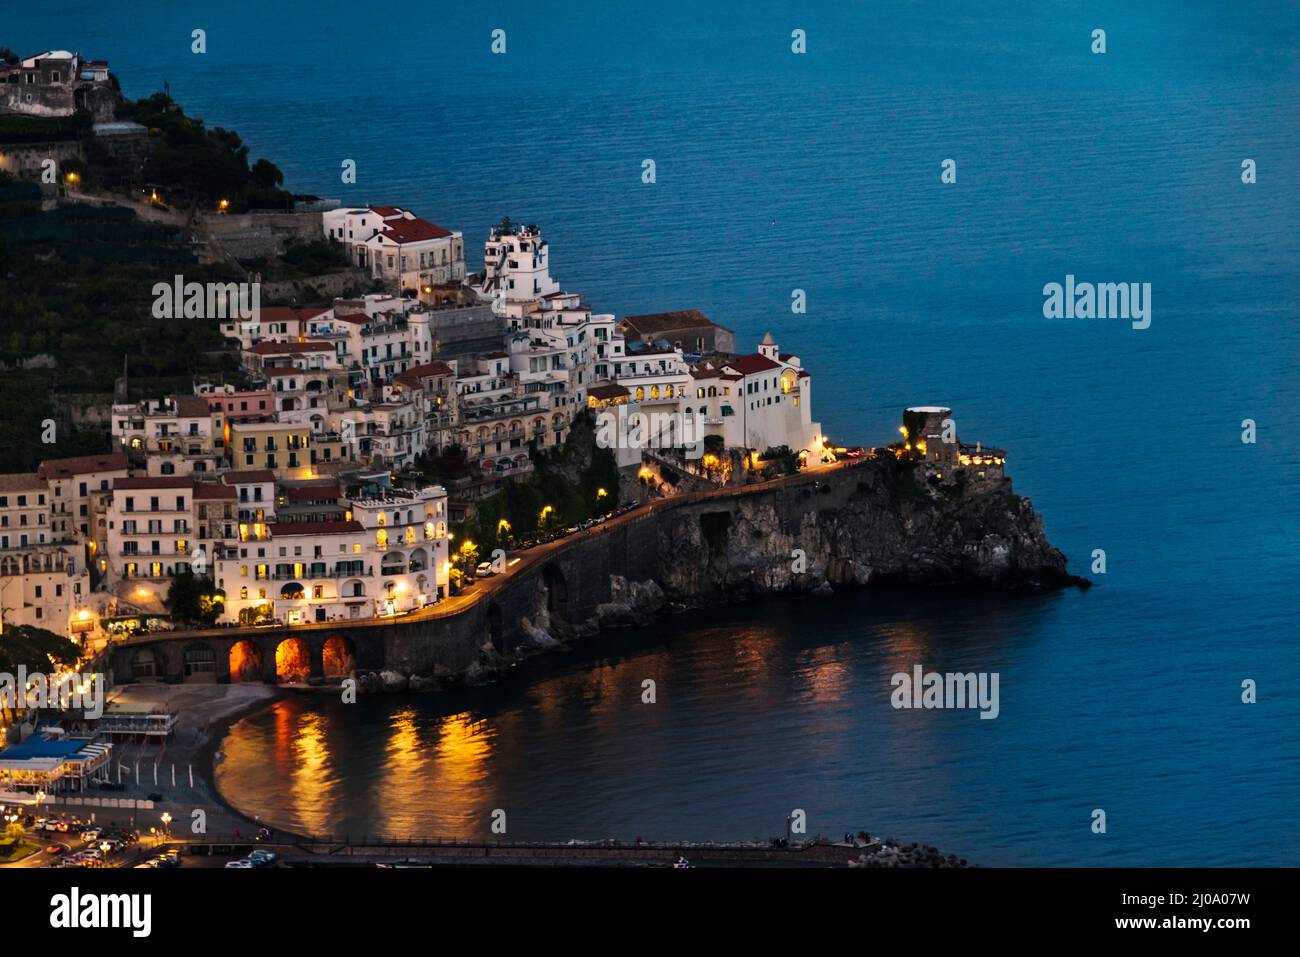 Vista nocturna de Amalfi a lo largo de la costa de Amalfi, provincia de Salerno, región de Compania, Italia Foto de stock